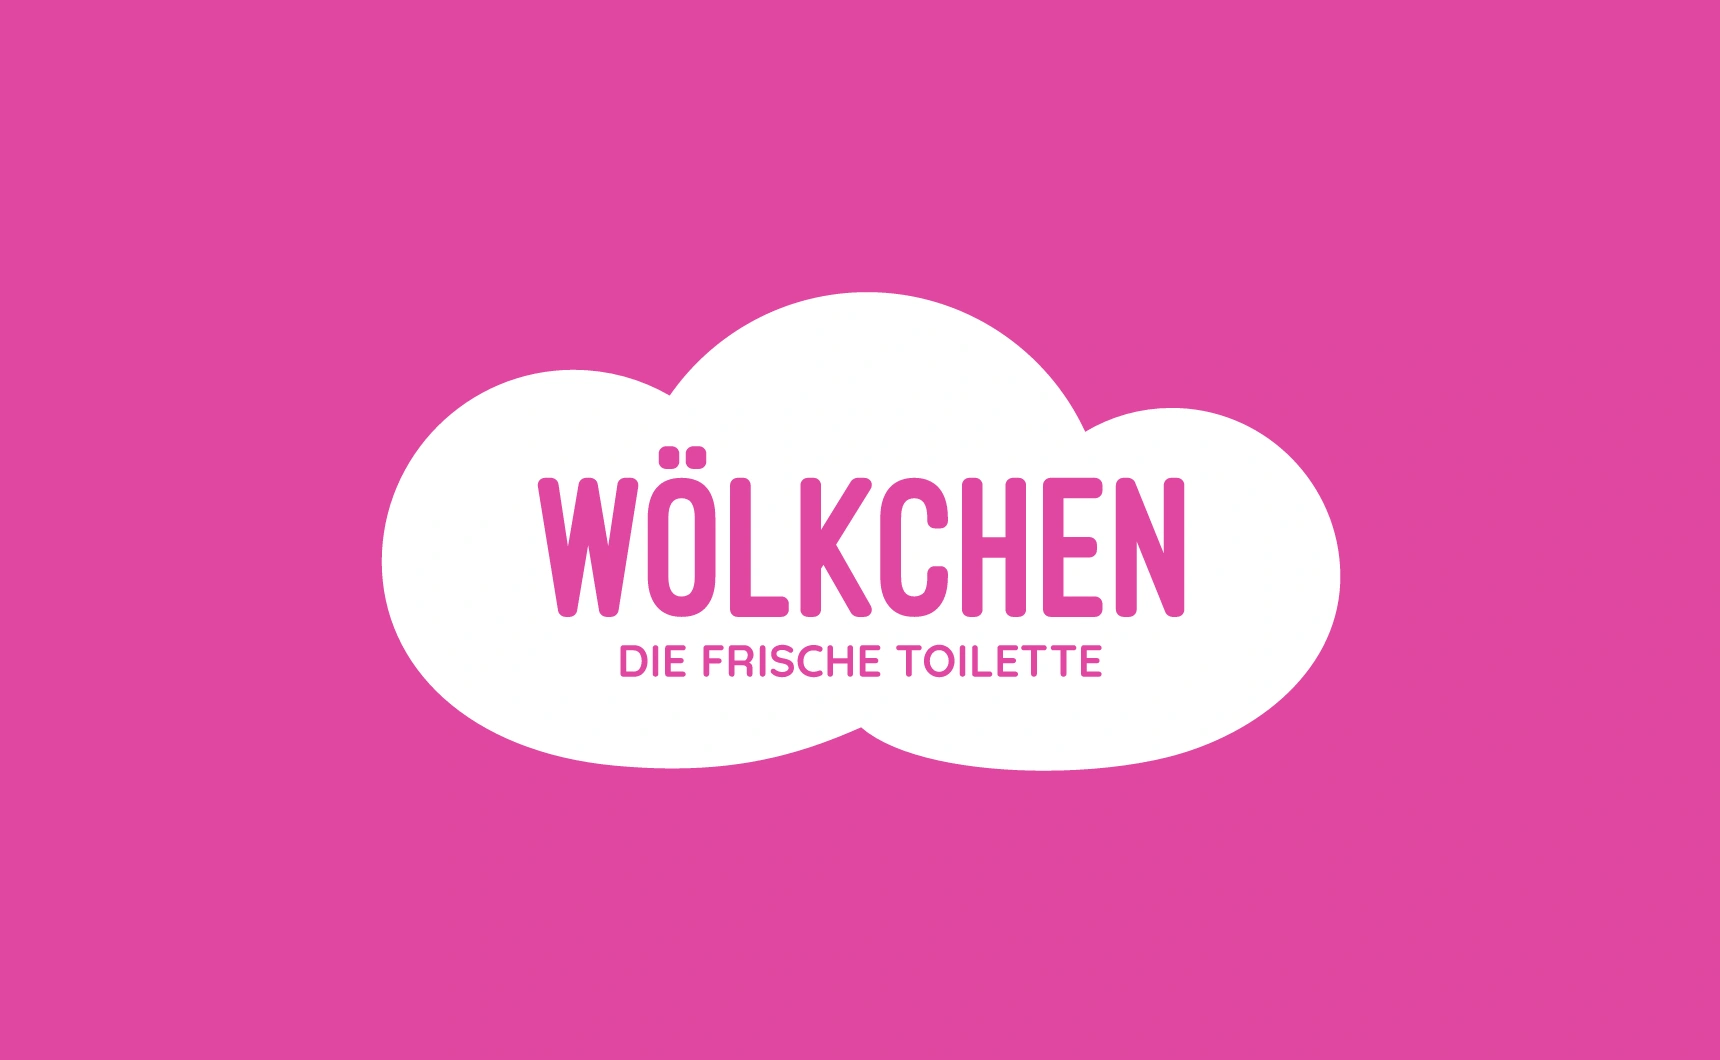 Ein Bild zeigt das Logo von Wölkchen - Der frische Toilette auf pinkem Hintergund.